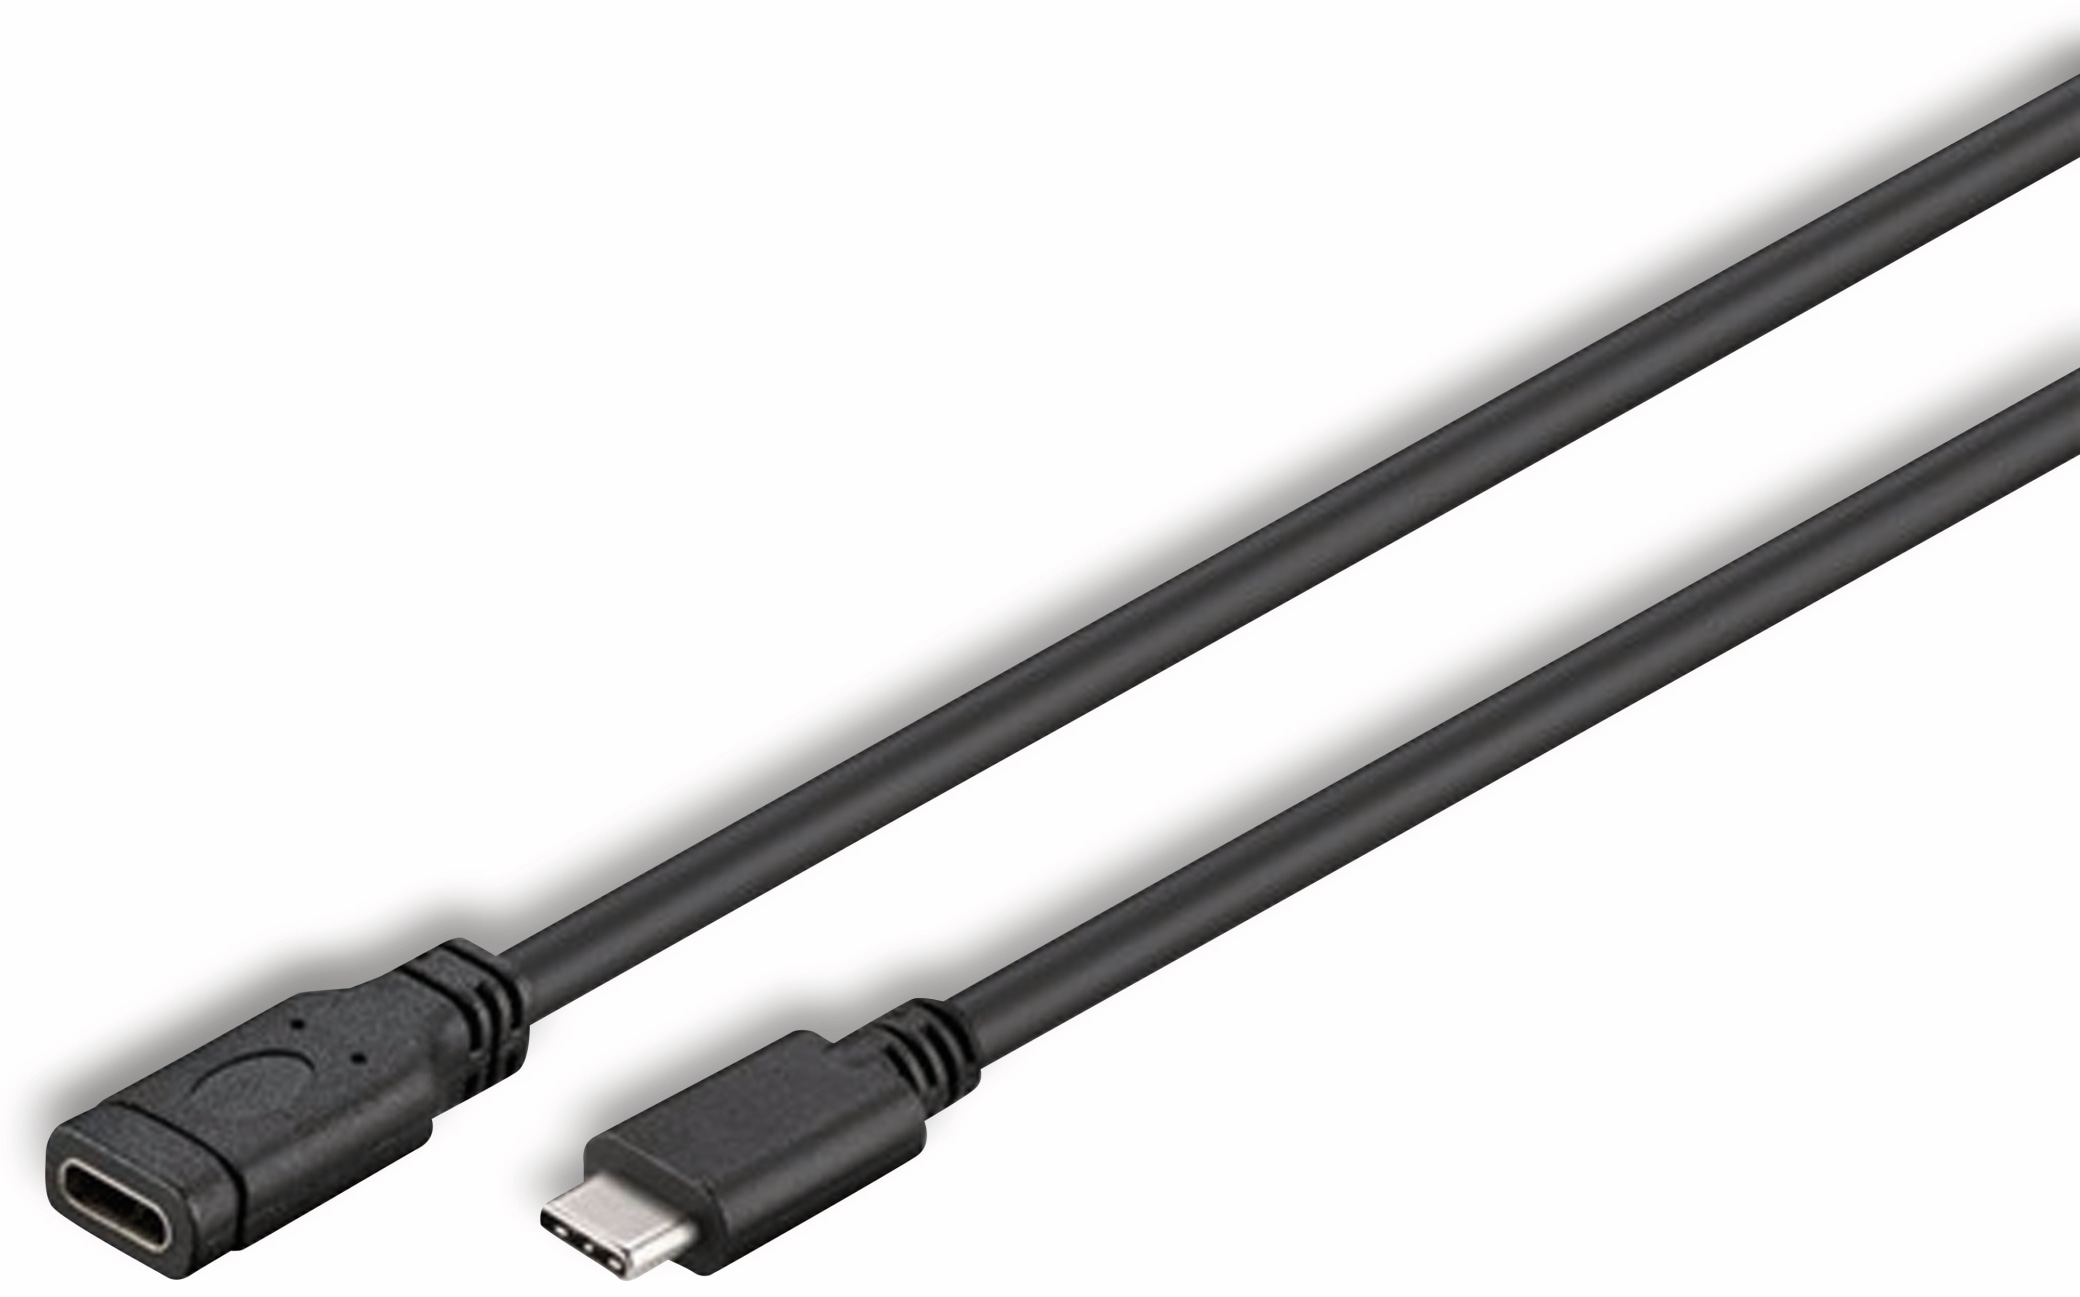 GOOBAY USB-C 3.1 Super-Speed Verlängerung 45393, C/C, 1 m, schwarz